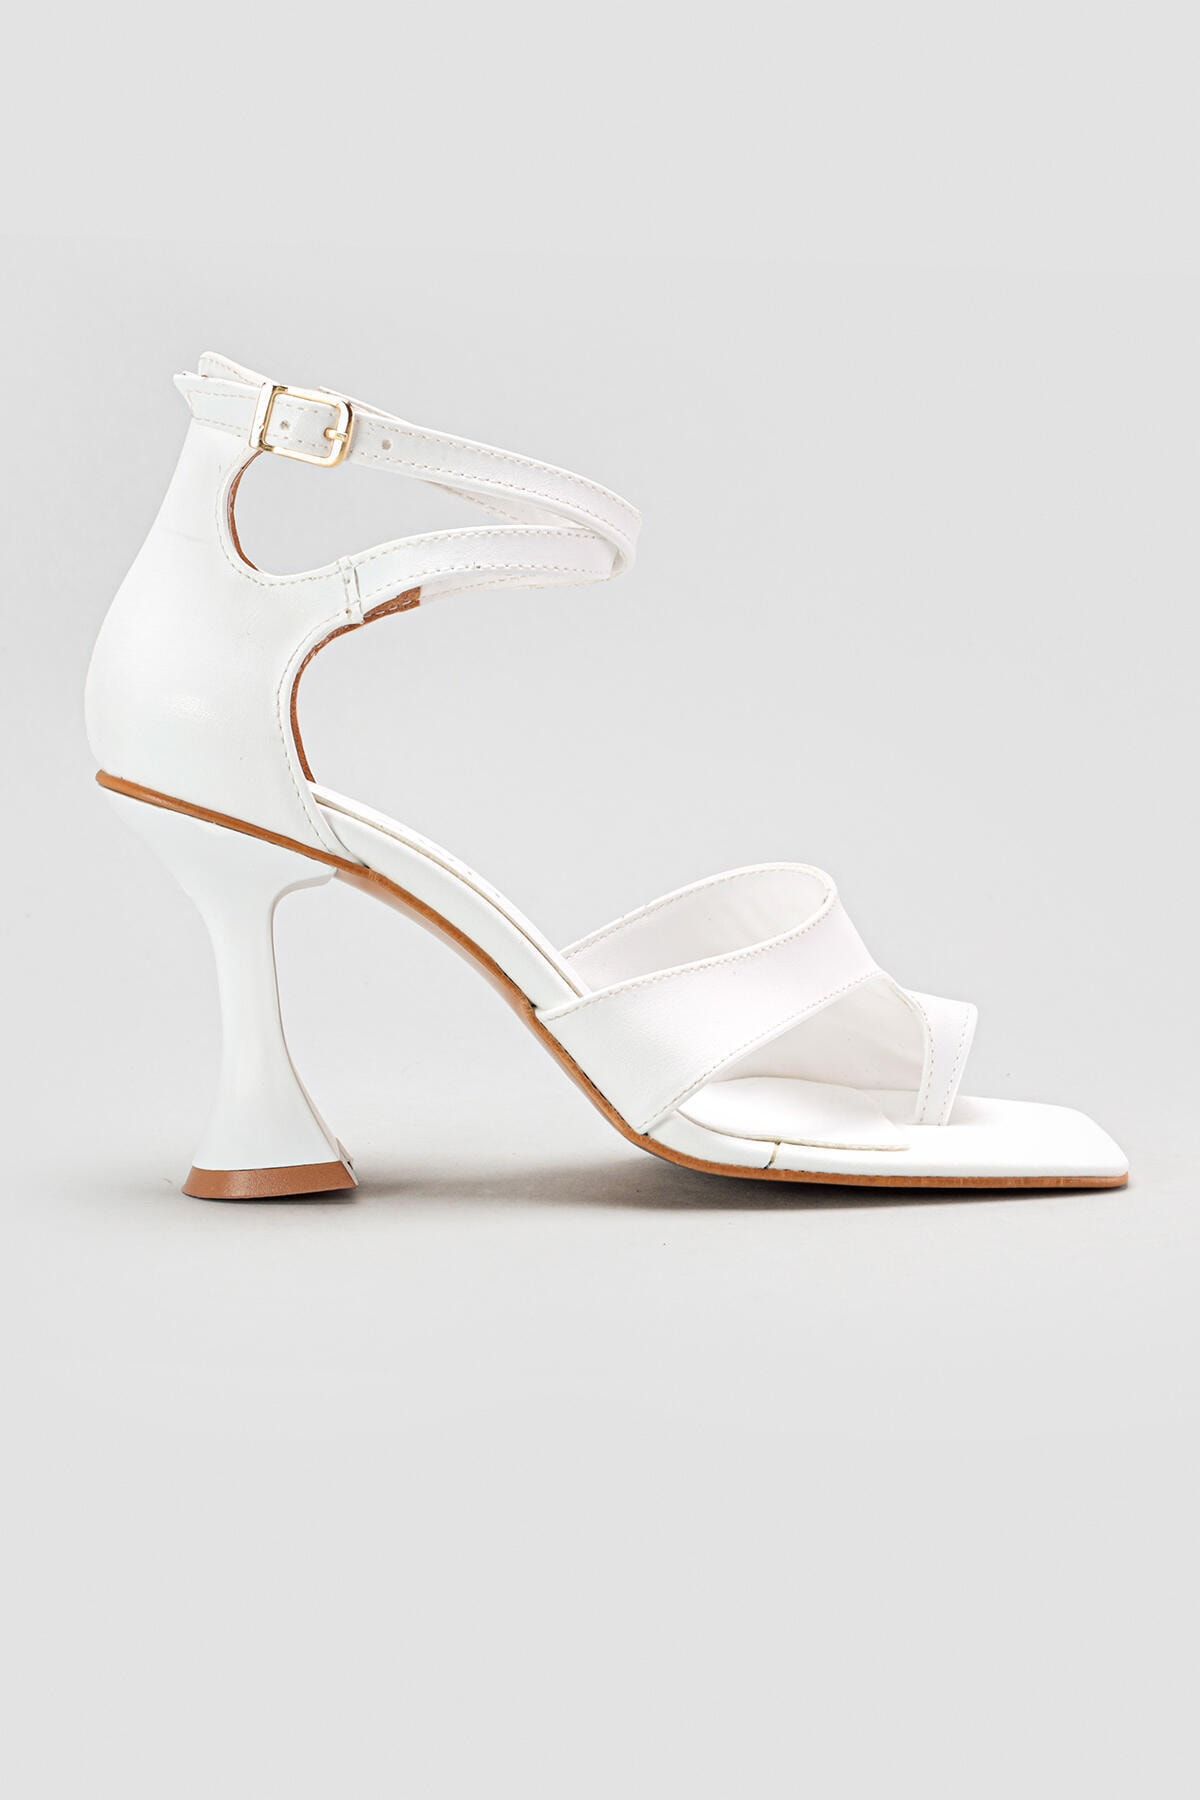 Limoya Geneva Beyaz Parmak Arası Topuklu Ayakkabı